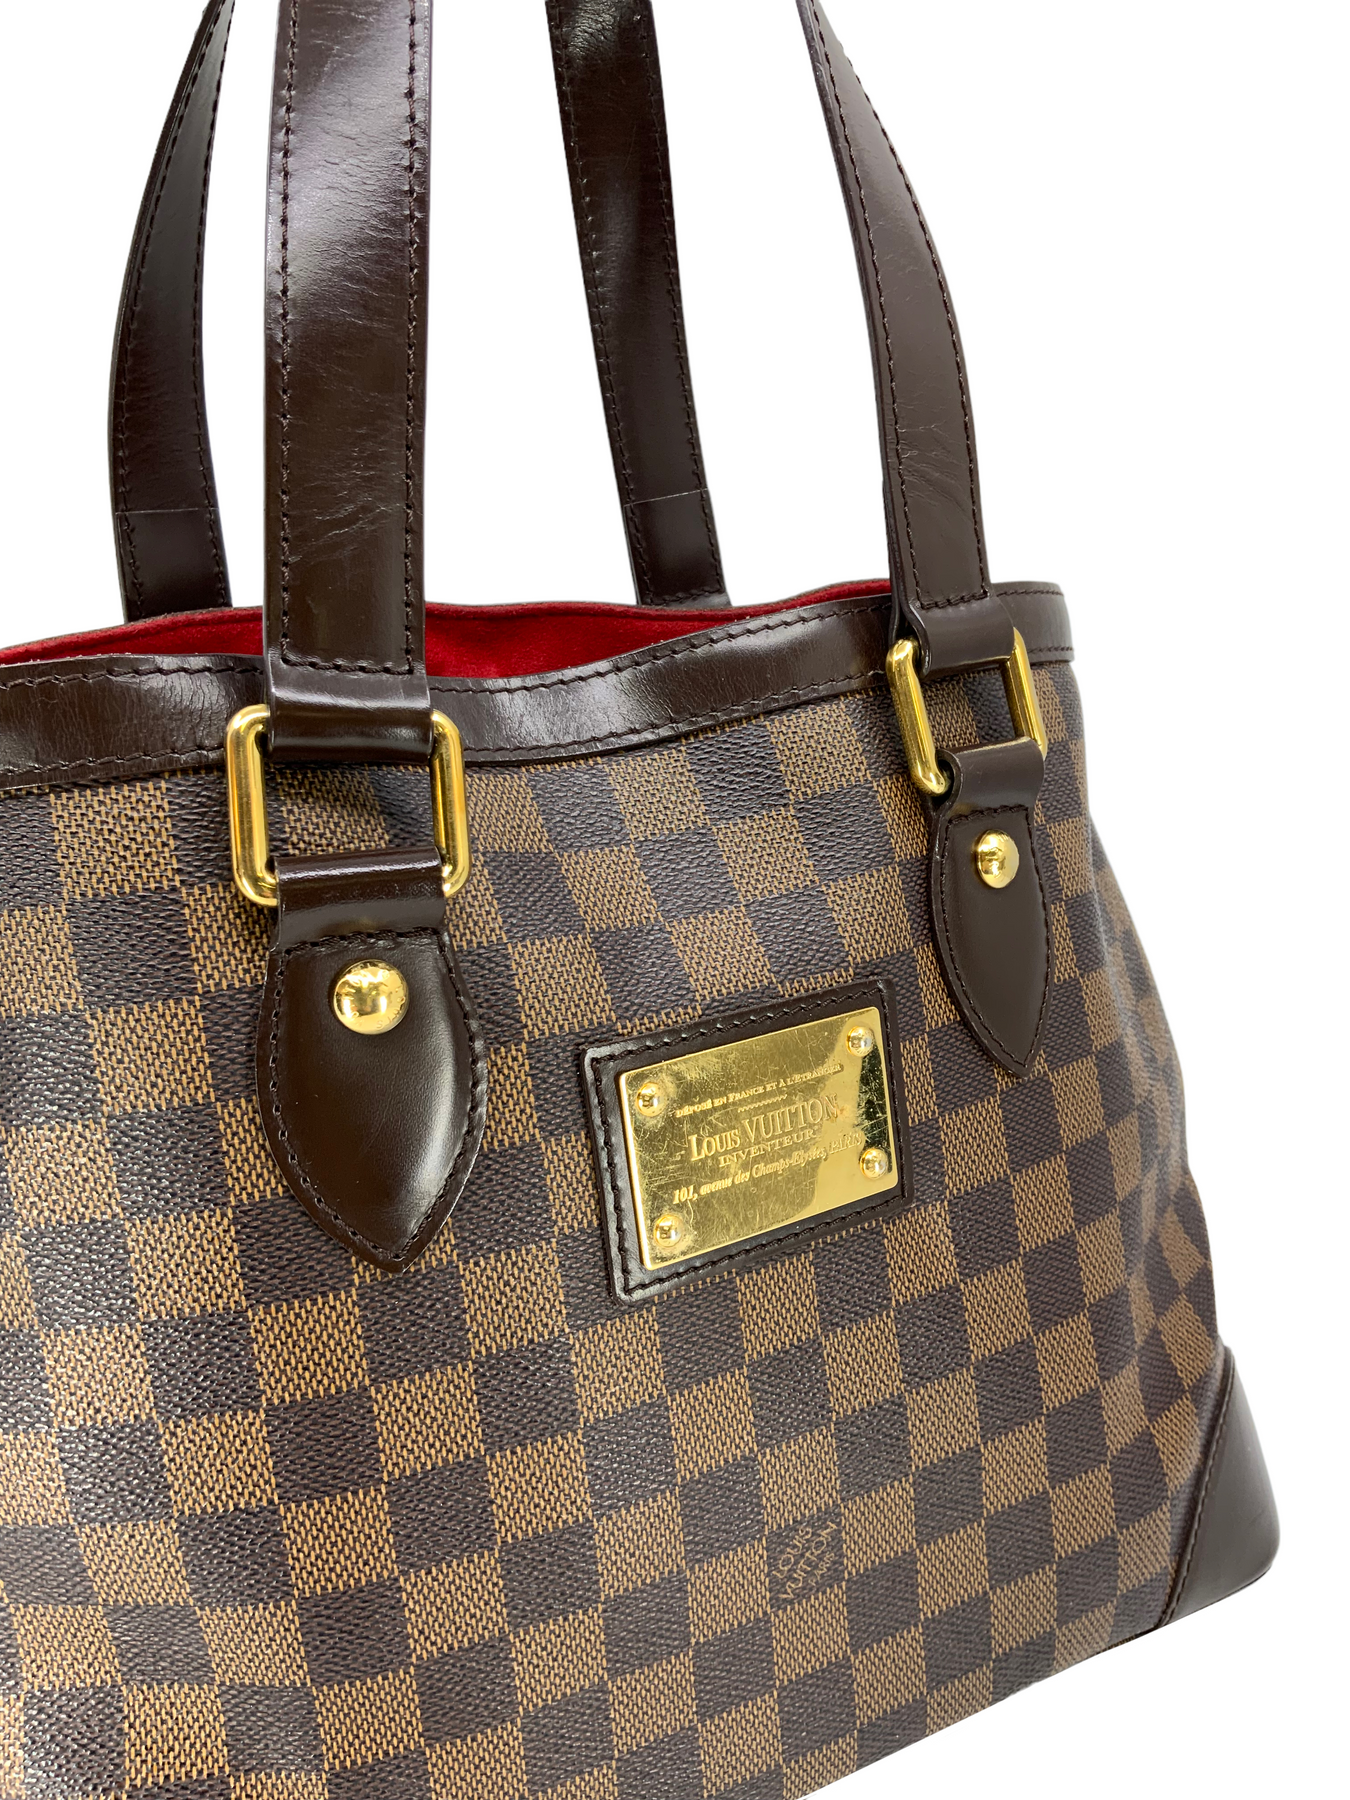 Louis Vuitton Damier Ebene Hampstead PM Bag - Consigned Designs